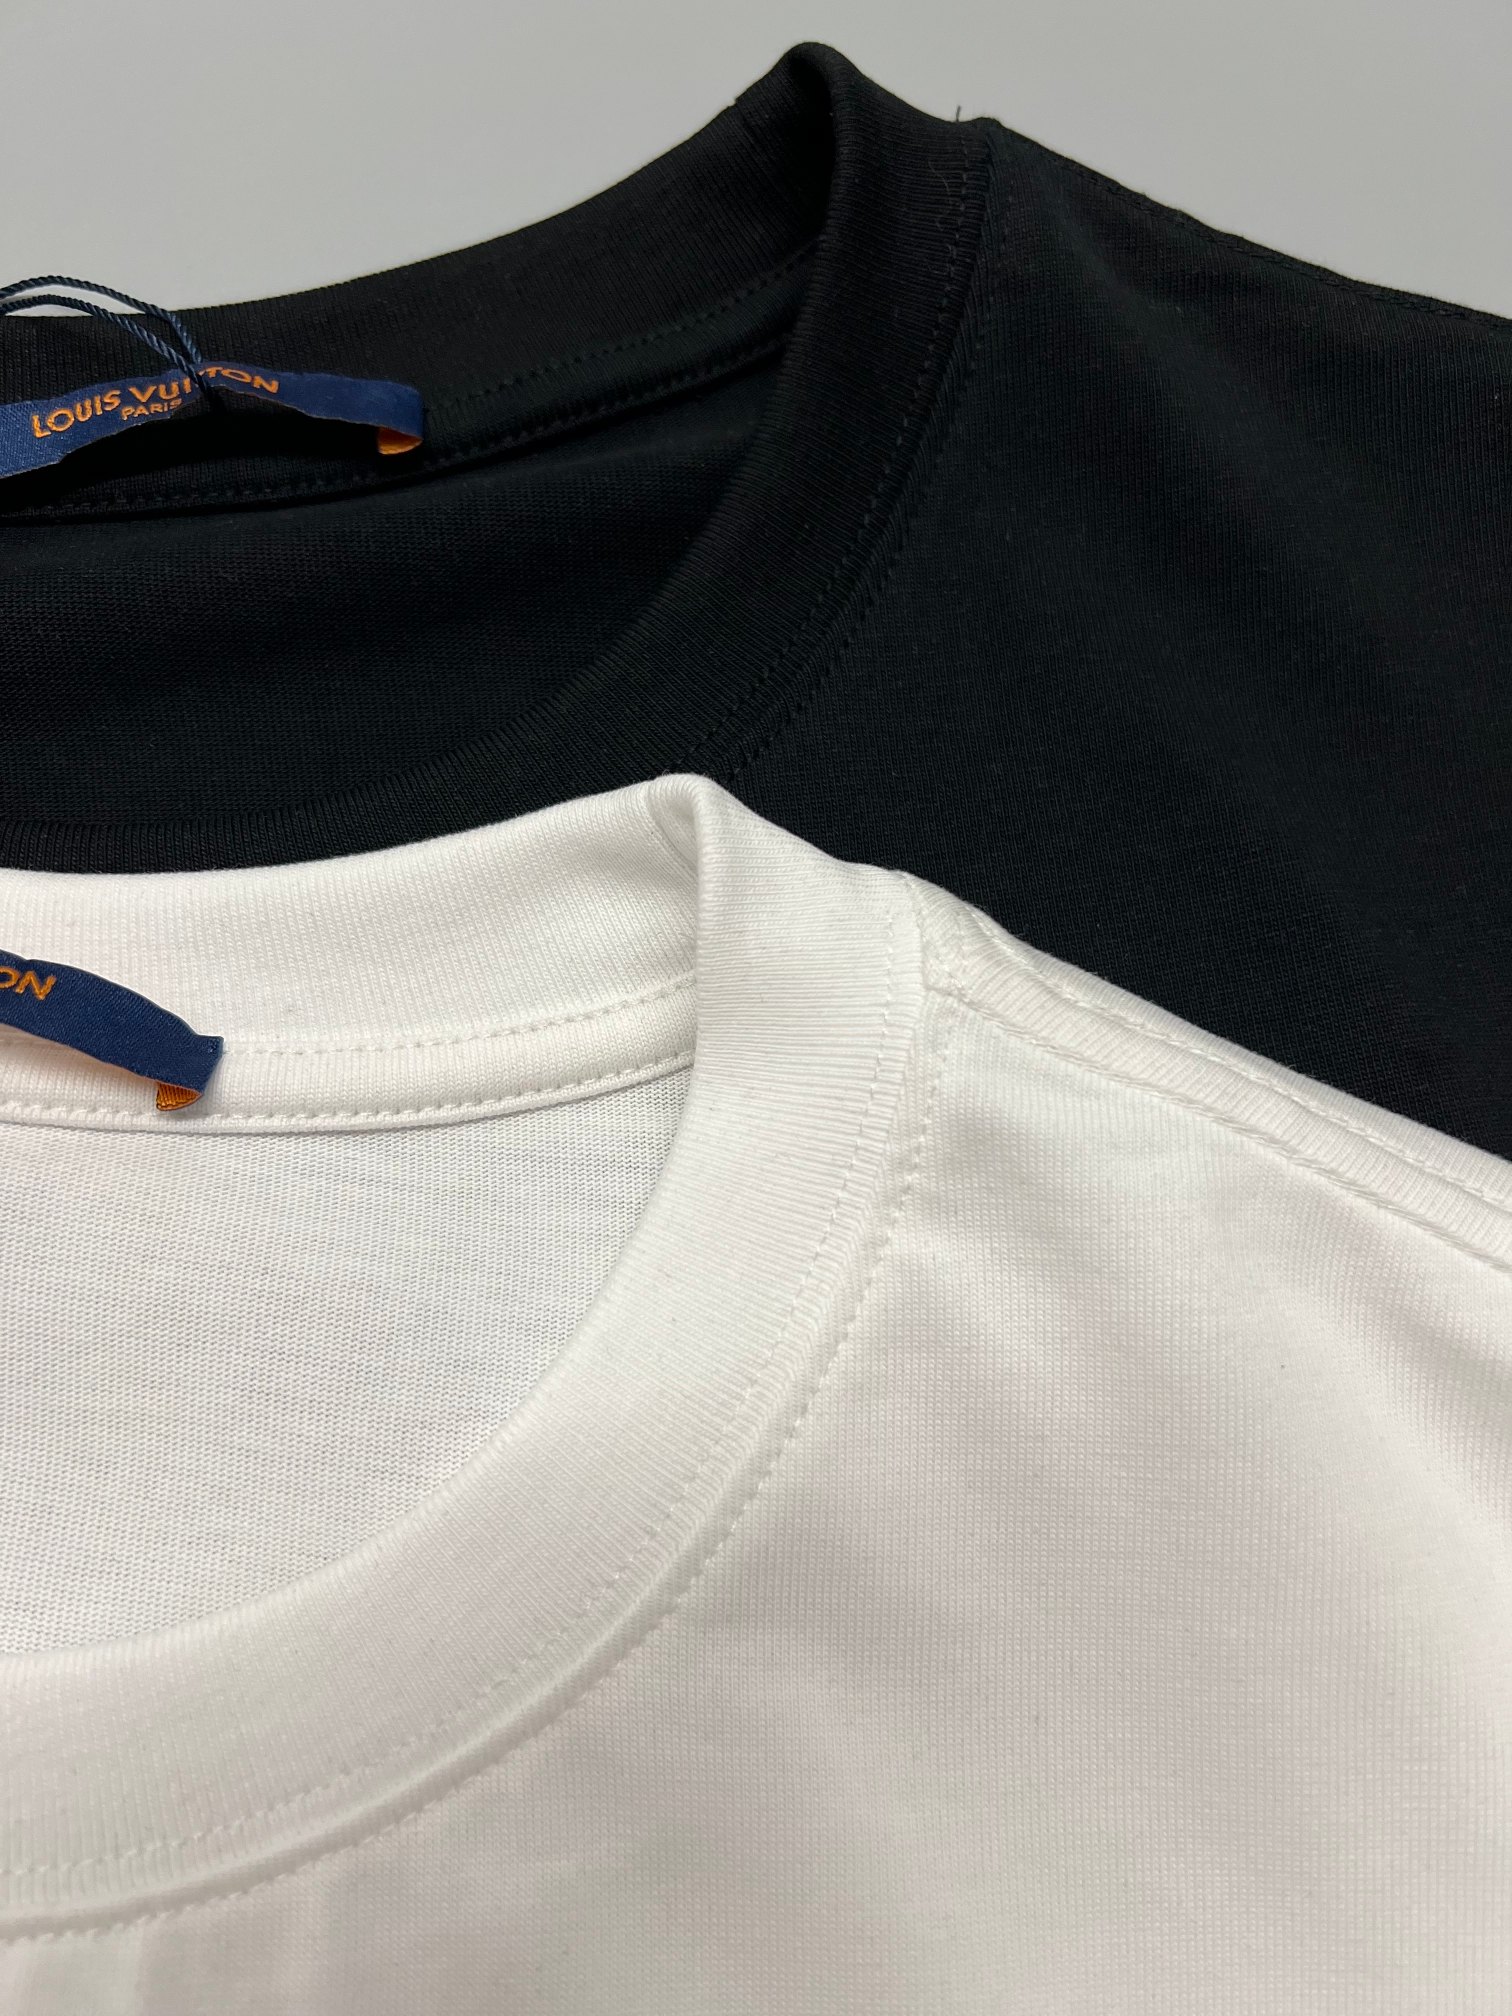 LV路易威登短袖T恤工艺印花颜色黑色白色码数SXL面料精梳紧密棉盖棉280gb柔顺手感宽松版型设计男女同